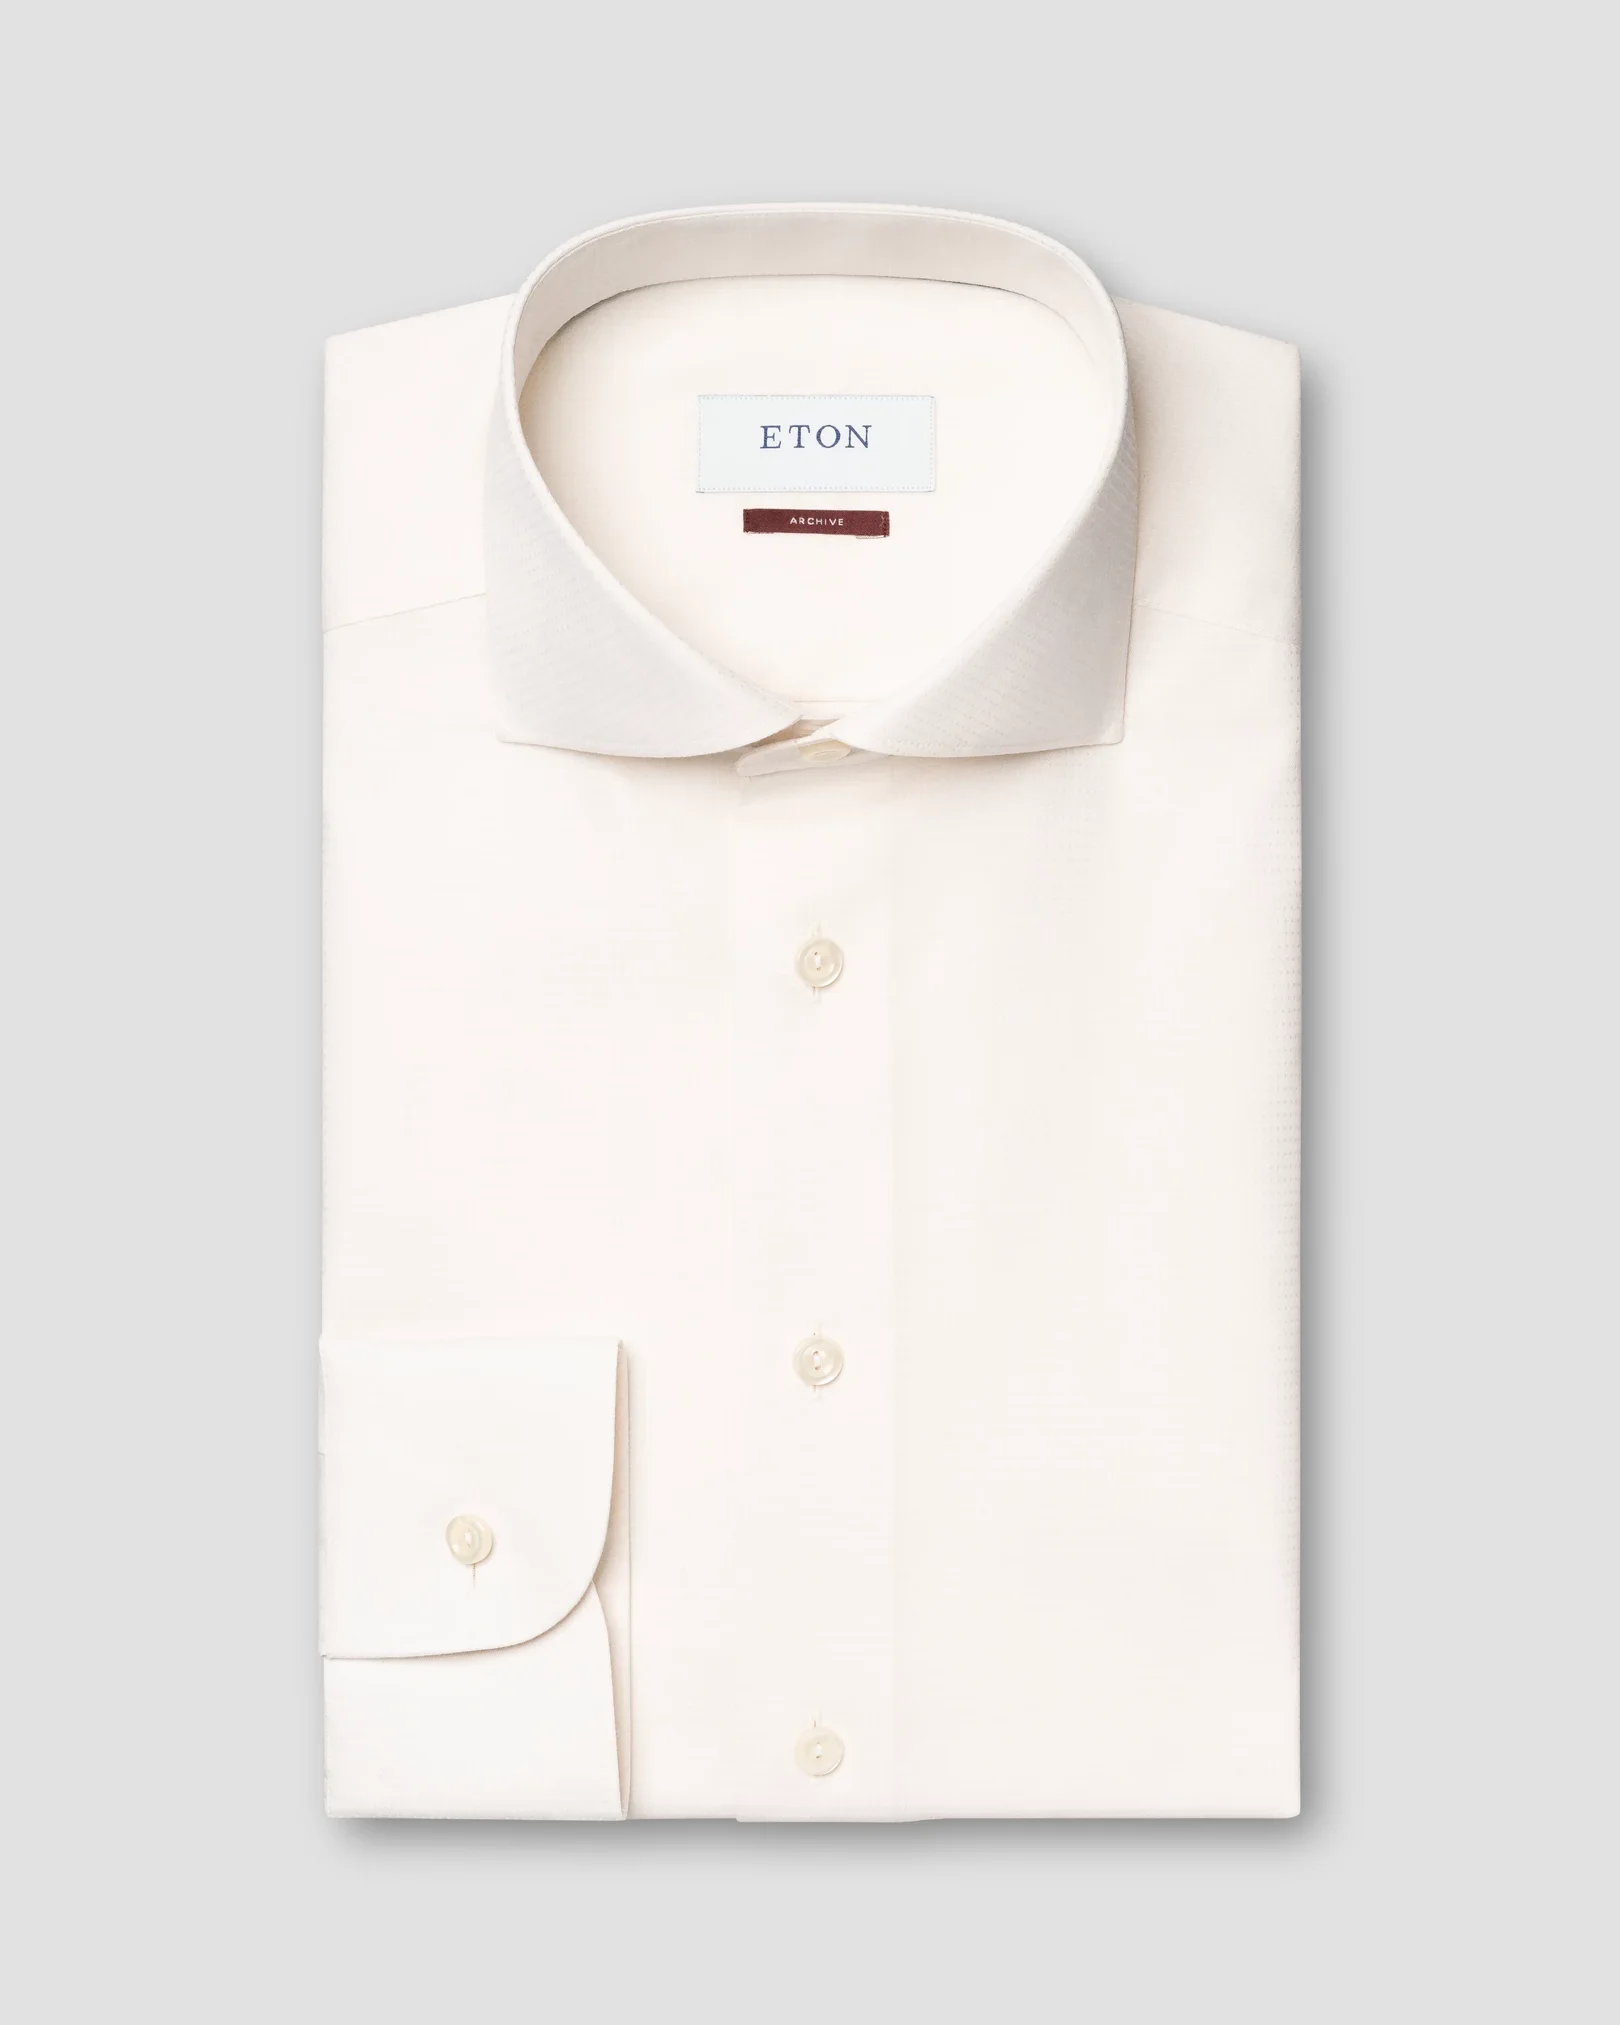 Off-white, småprickig dobbyskjorta